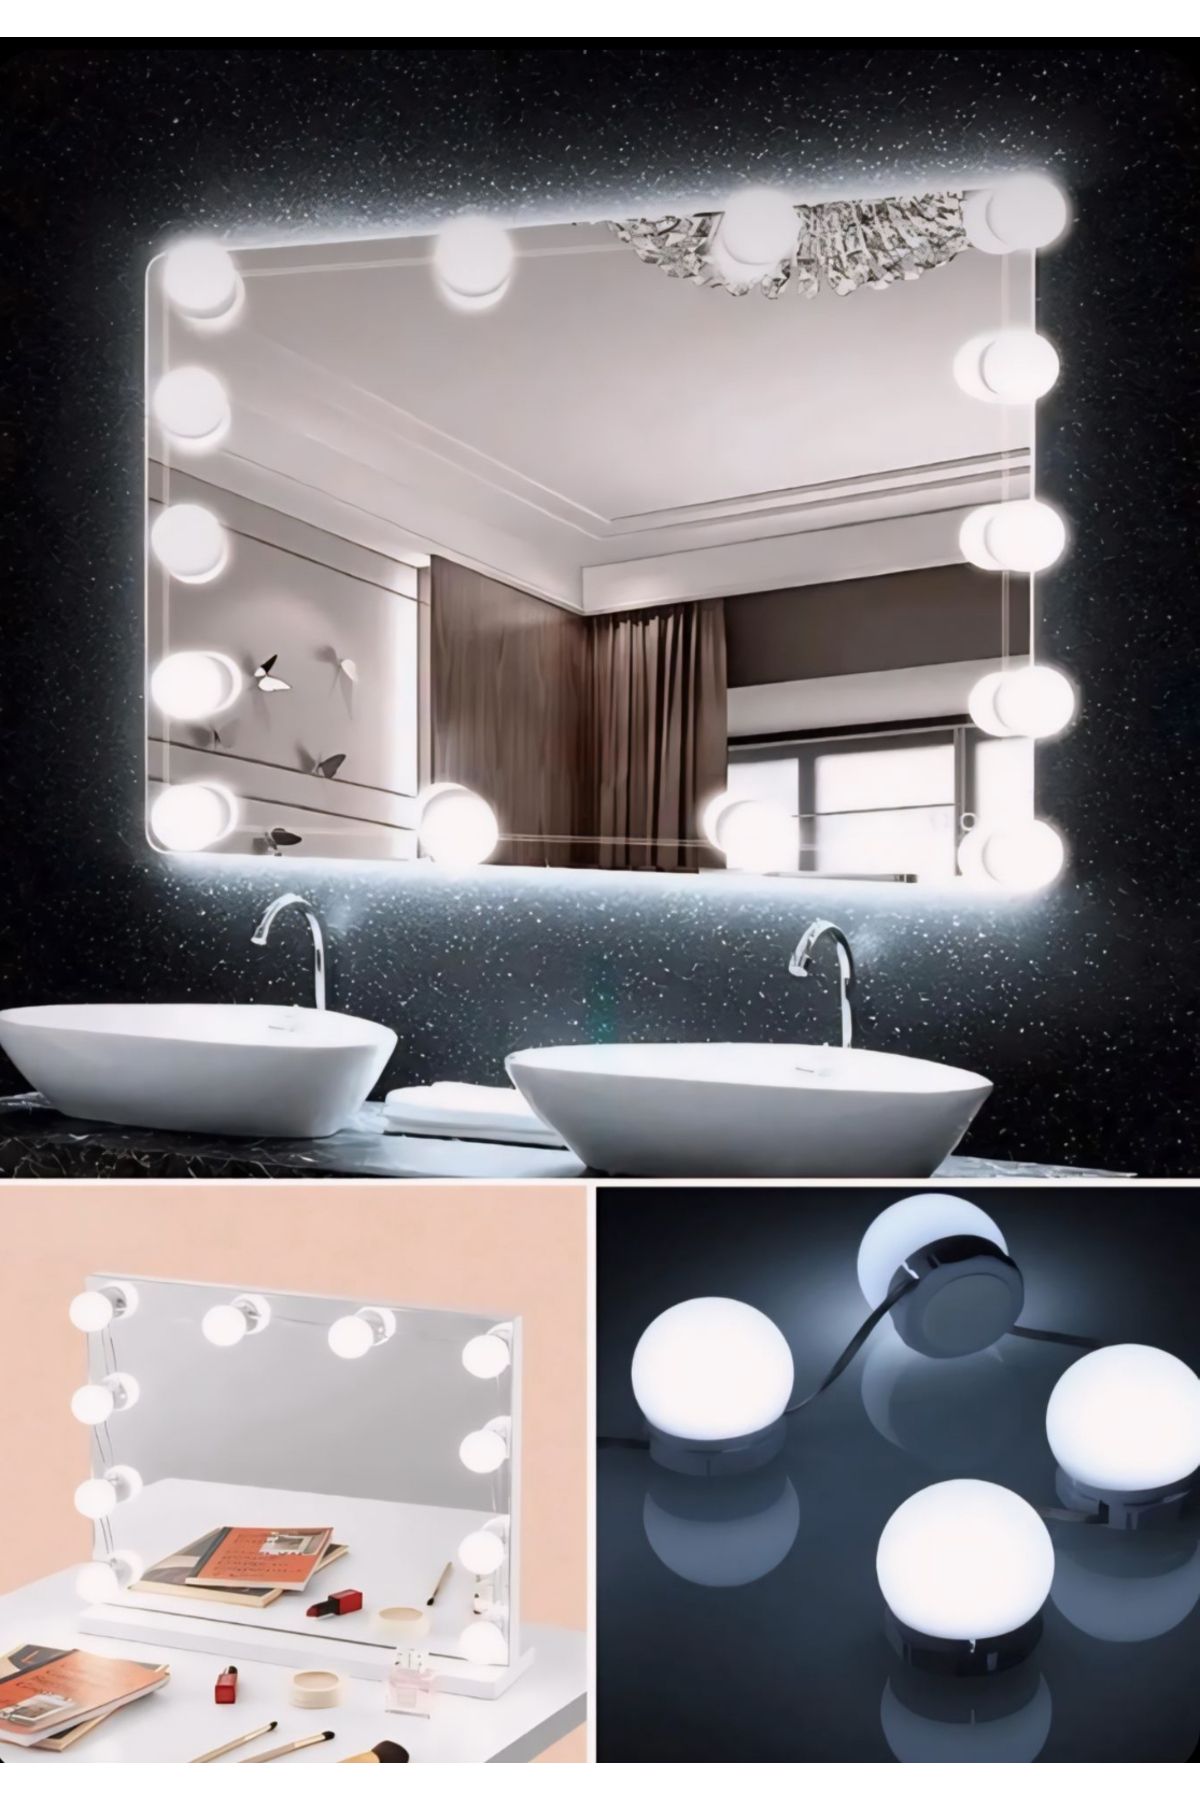 Eli-Ka Home Makyaj Masası,banyo Aynası Aydınlatma Kiti/ Dekoratif Şık Kolay Kurulan Yapışkanlı Led Işık Seti